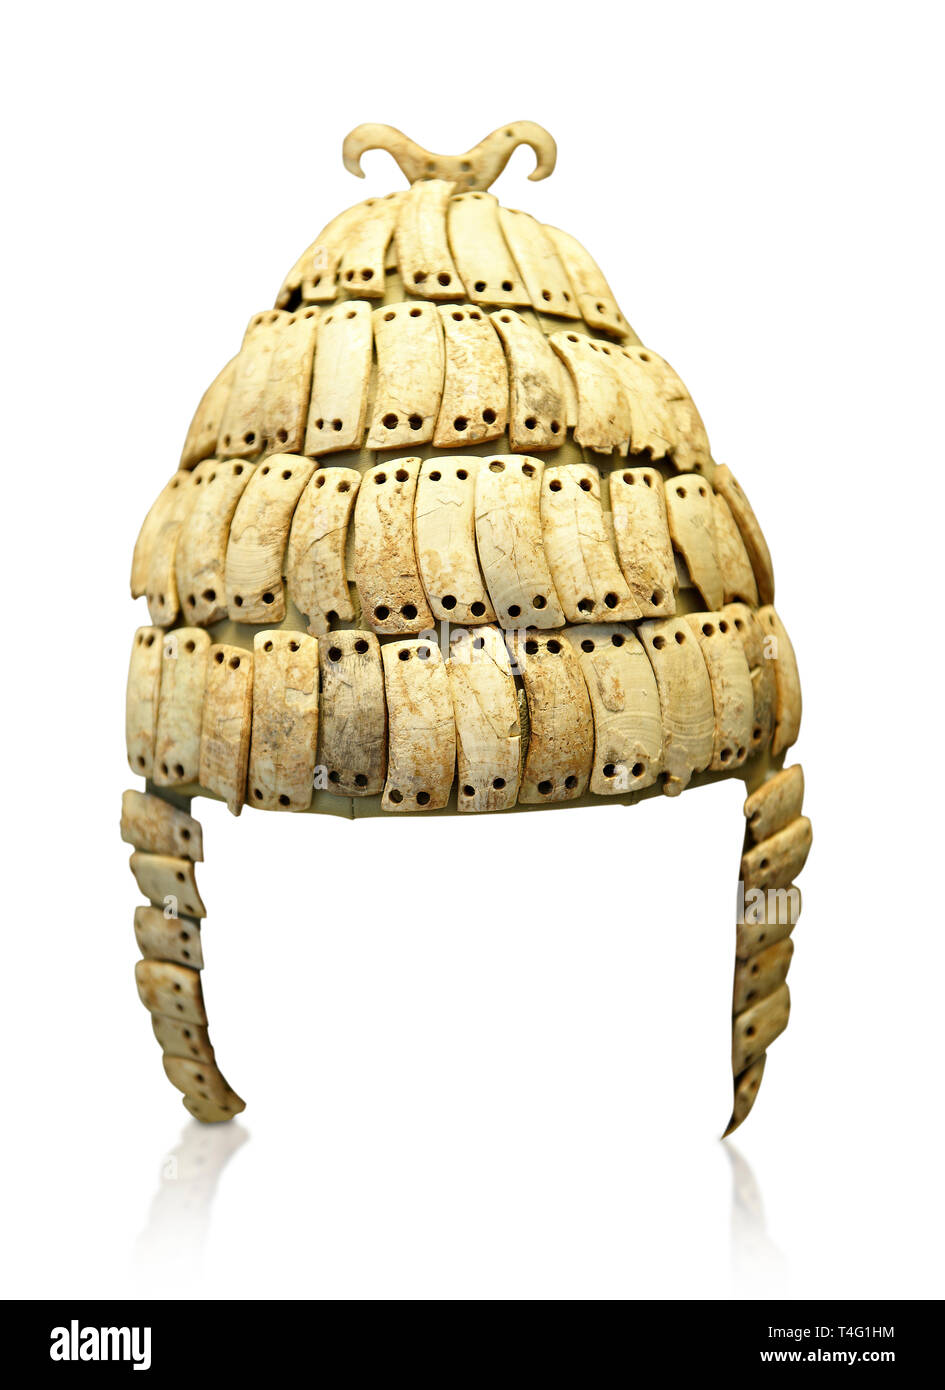 Colmillo de jabalí es el casco con protectores de la mejilla y Doble gancho  de hueso en la parte superior. Tumba 515 Micenas, Grecia. 14th-15th siglo  A.C. Museo Arqueológico Nacional, ael Fotografía